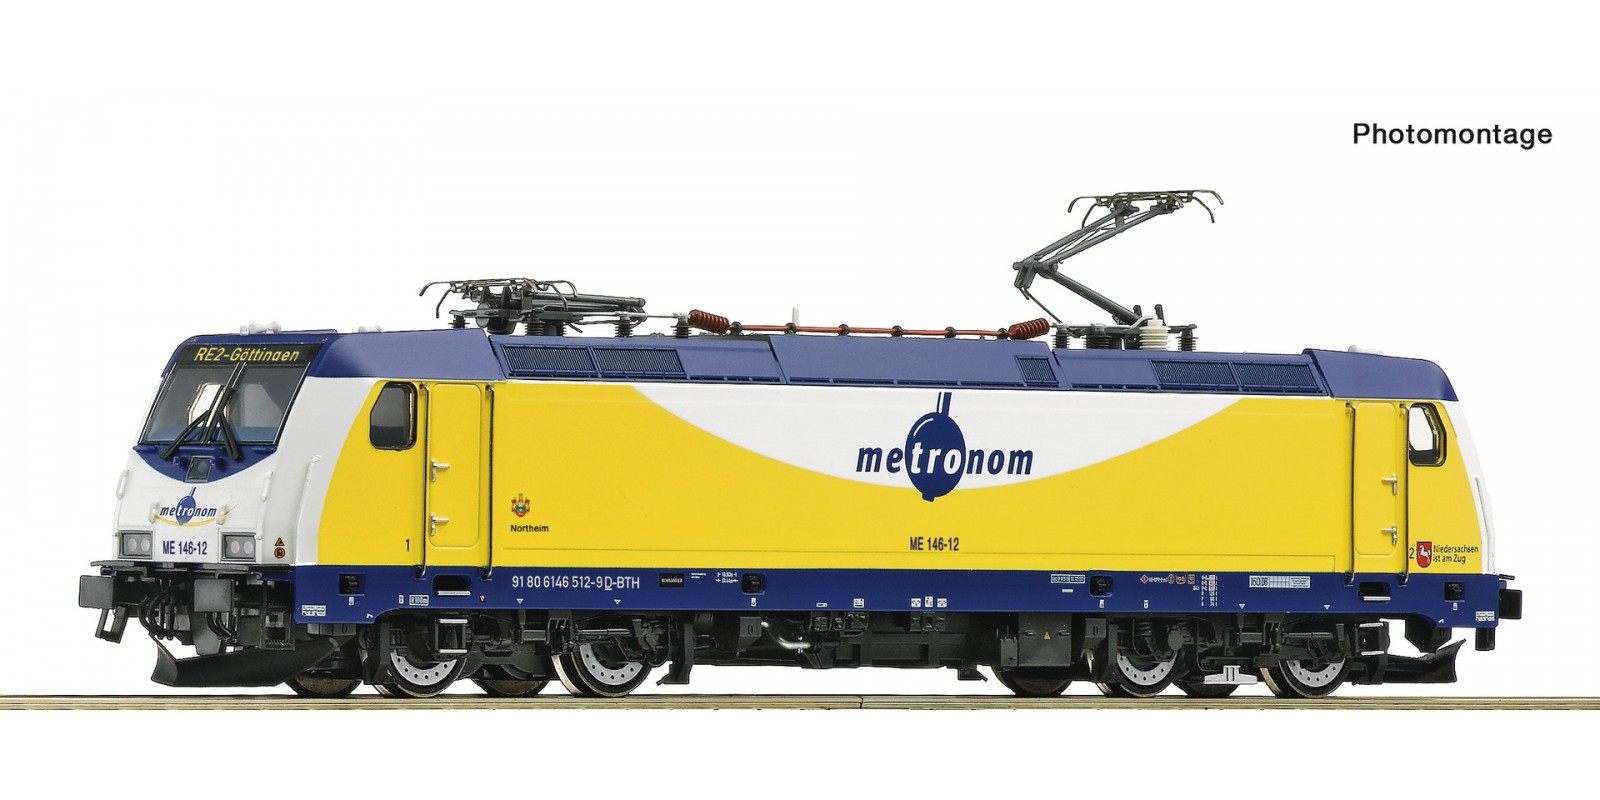 RO7520037 Electric locomotive ME 14 6-12, metronom           